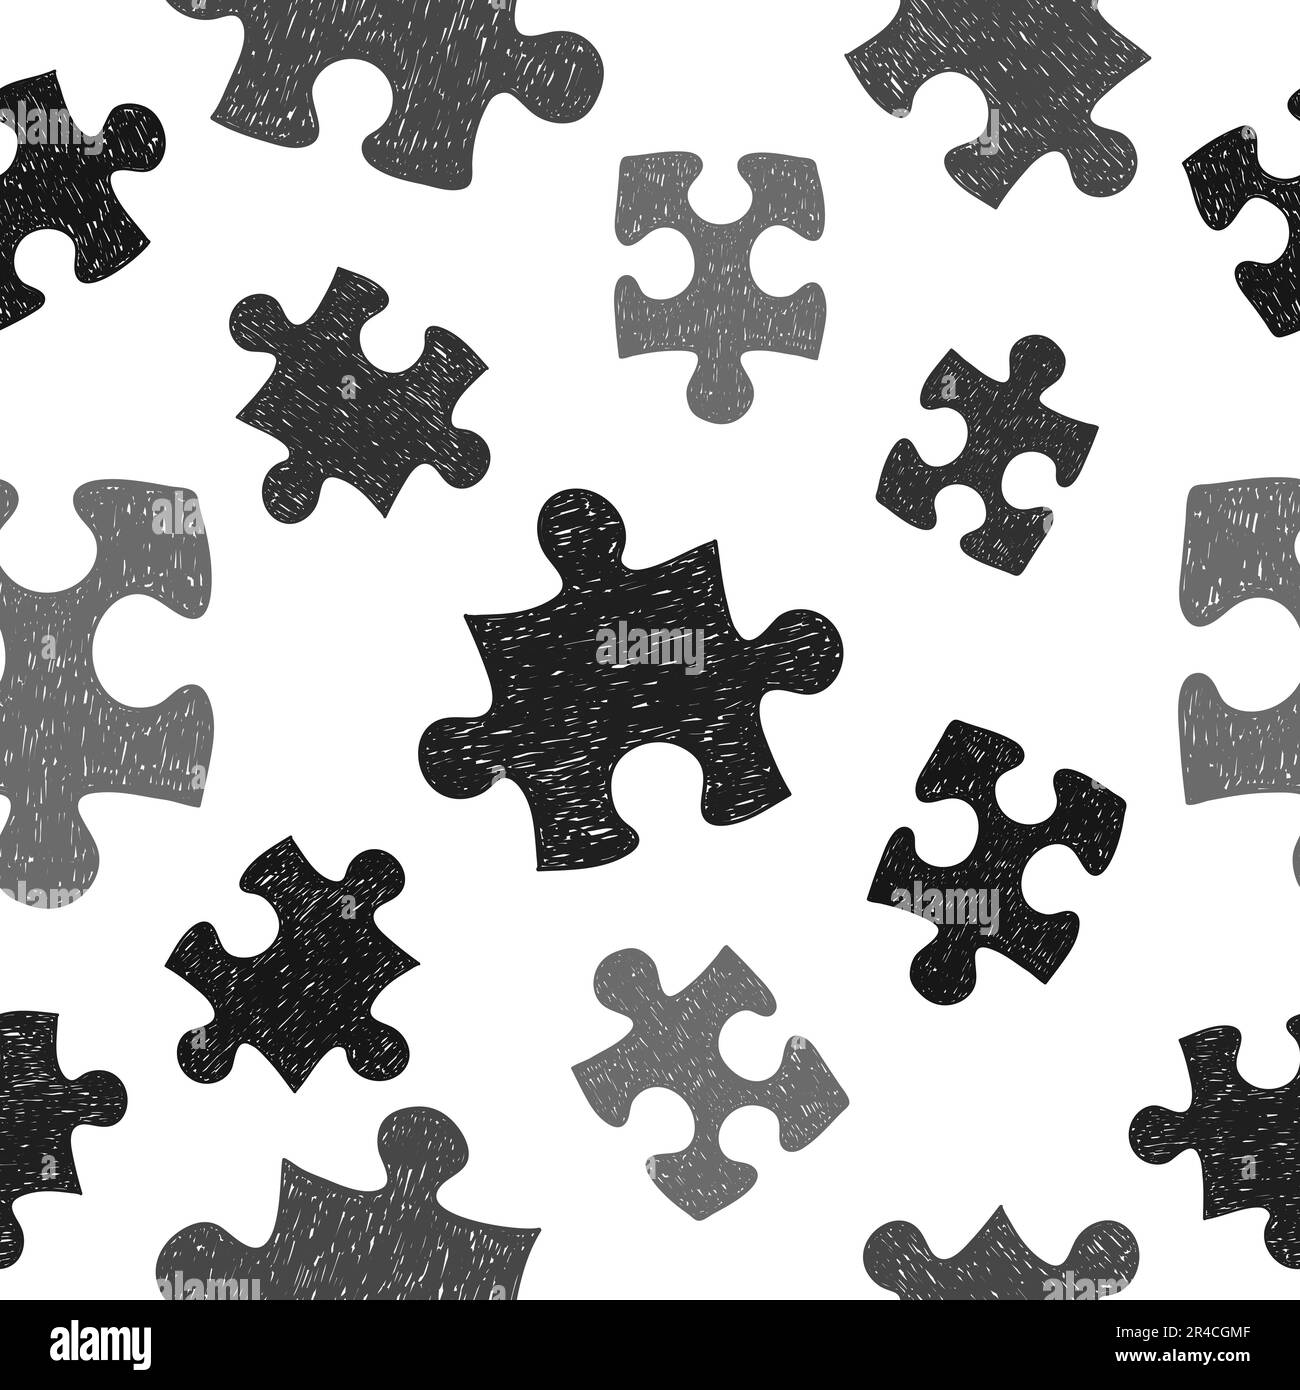 Jigsaw puzzle pieces background vector Imágenes de stock en blanco y negro  - Página 2 - Alamy